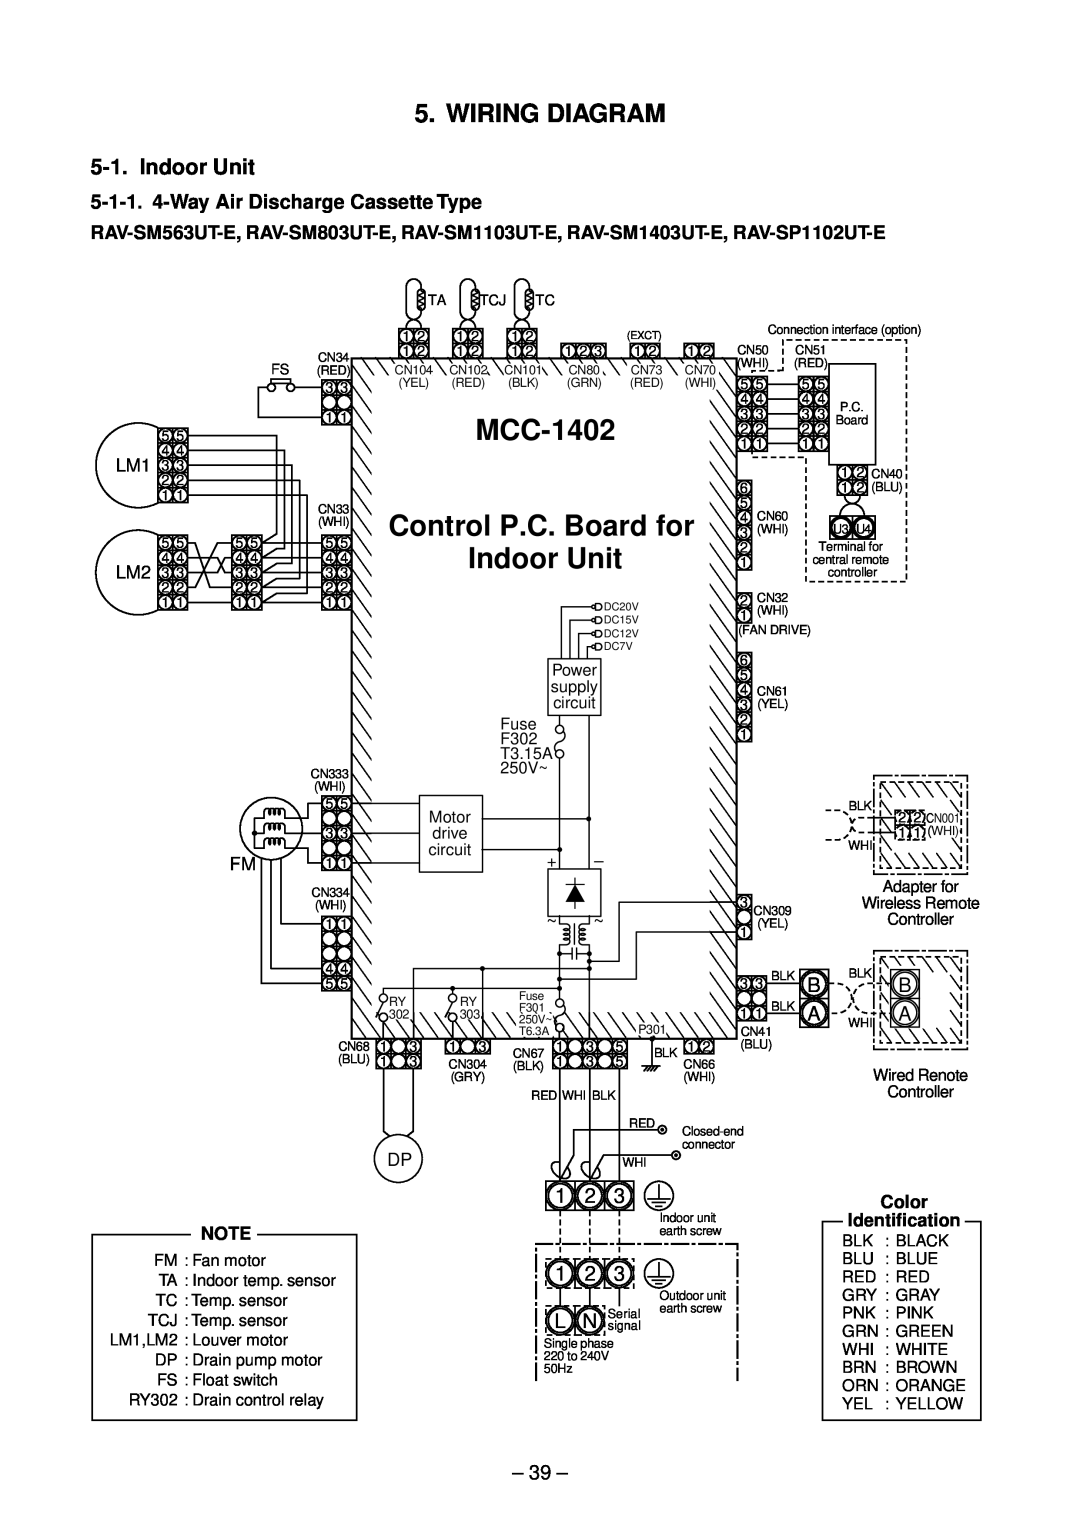 Toshiba RAV-SM562CT-E, RAV-SM1102CT-E MCC-1402, Control P.C. Board for, Indoor Unit, Wiring Diagram, Color, Identification 